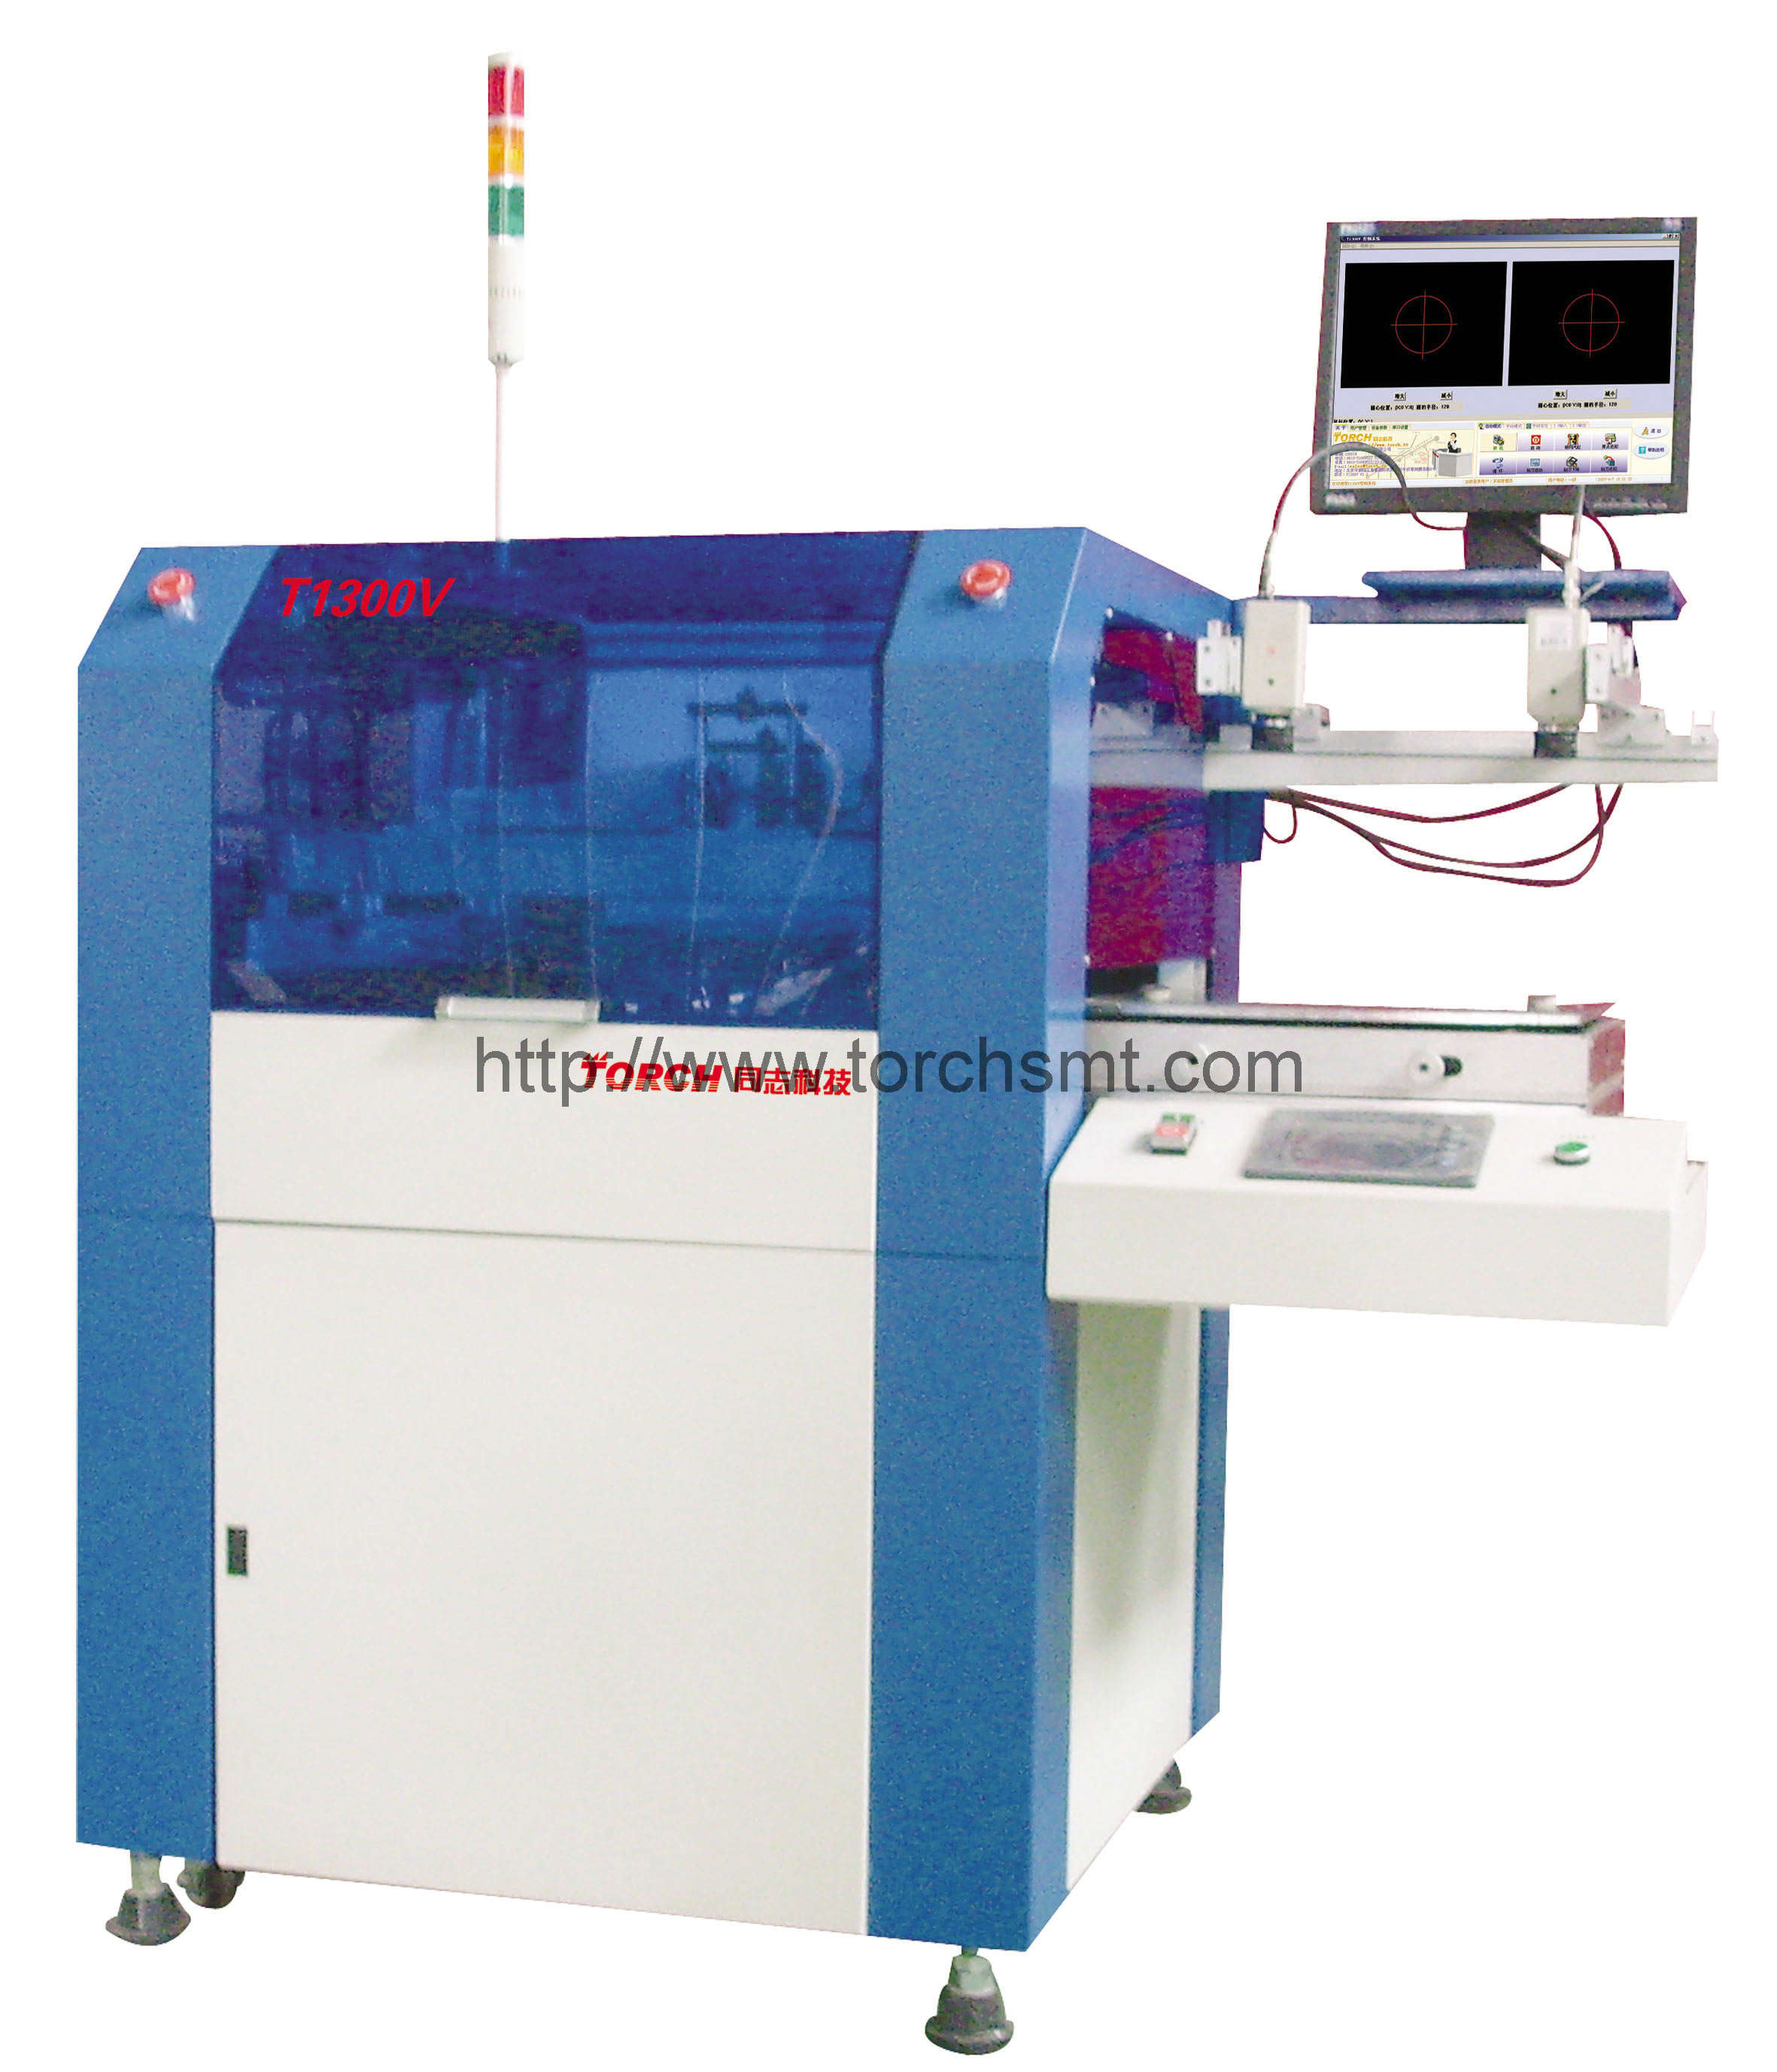 High precision se-mi automatic Printer T1300V